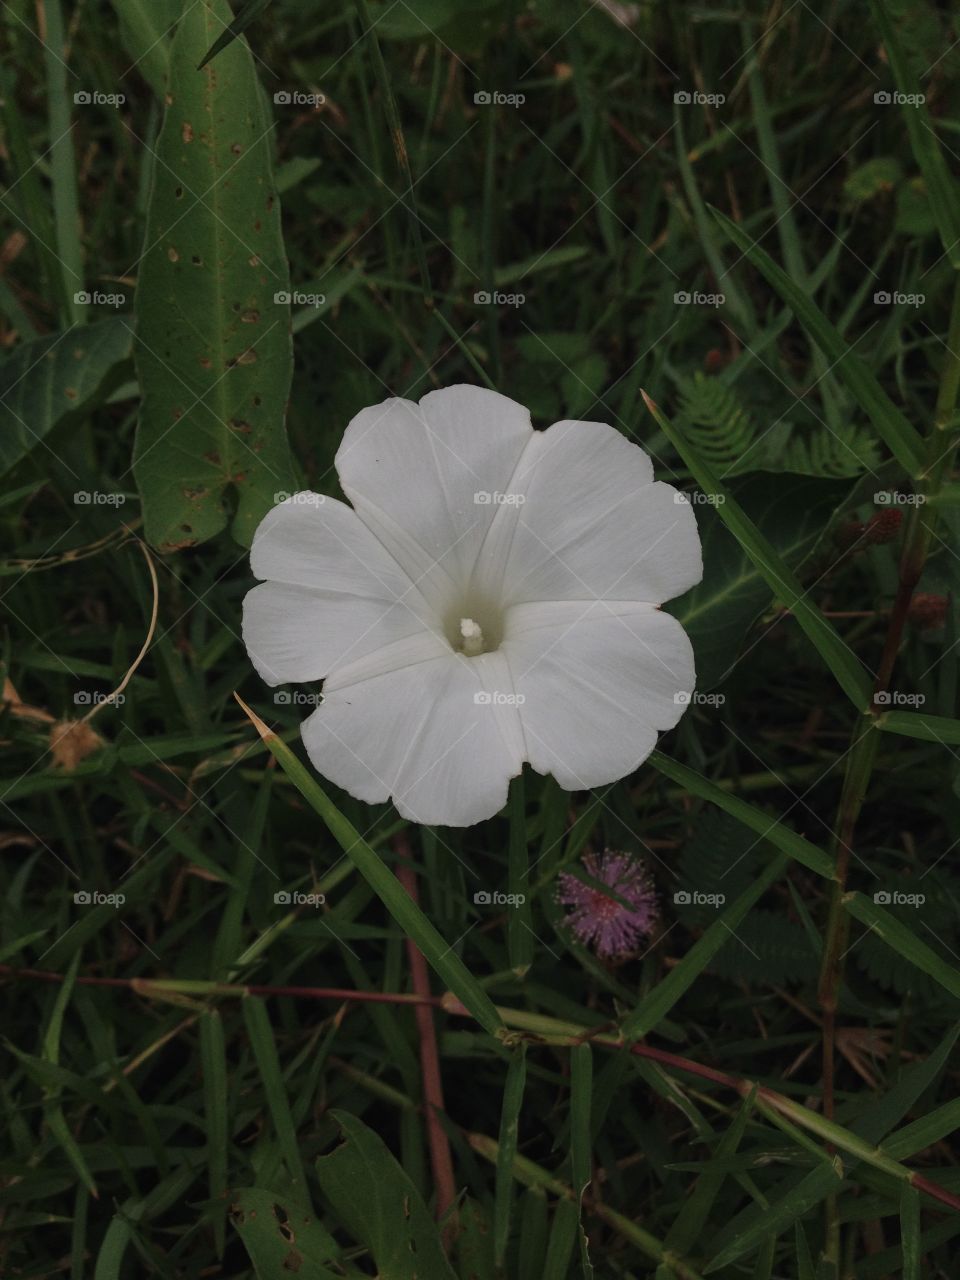 White Morning glory flower.